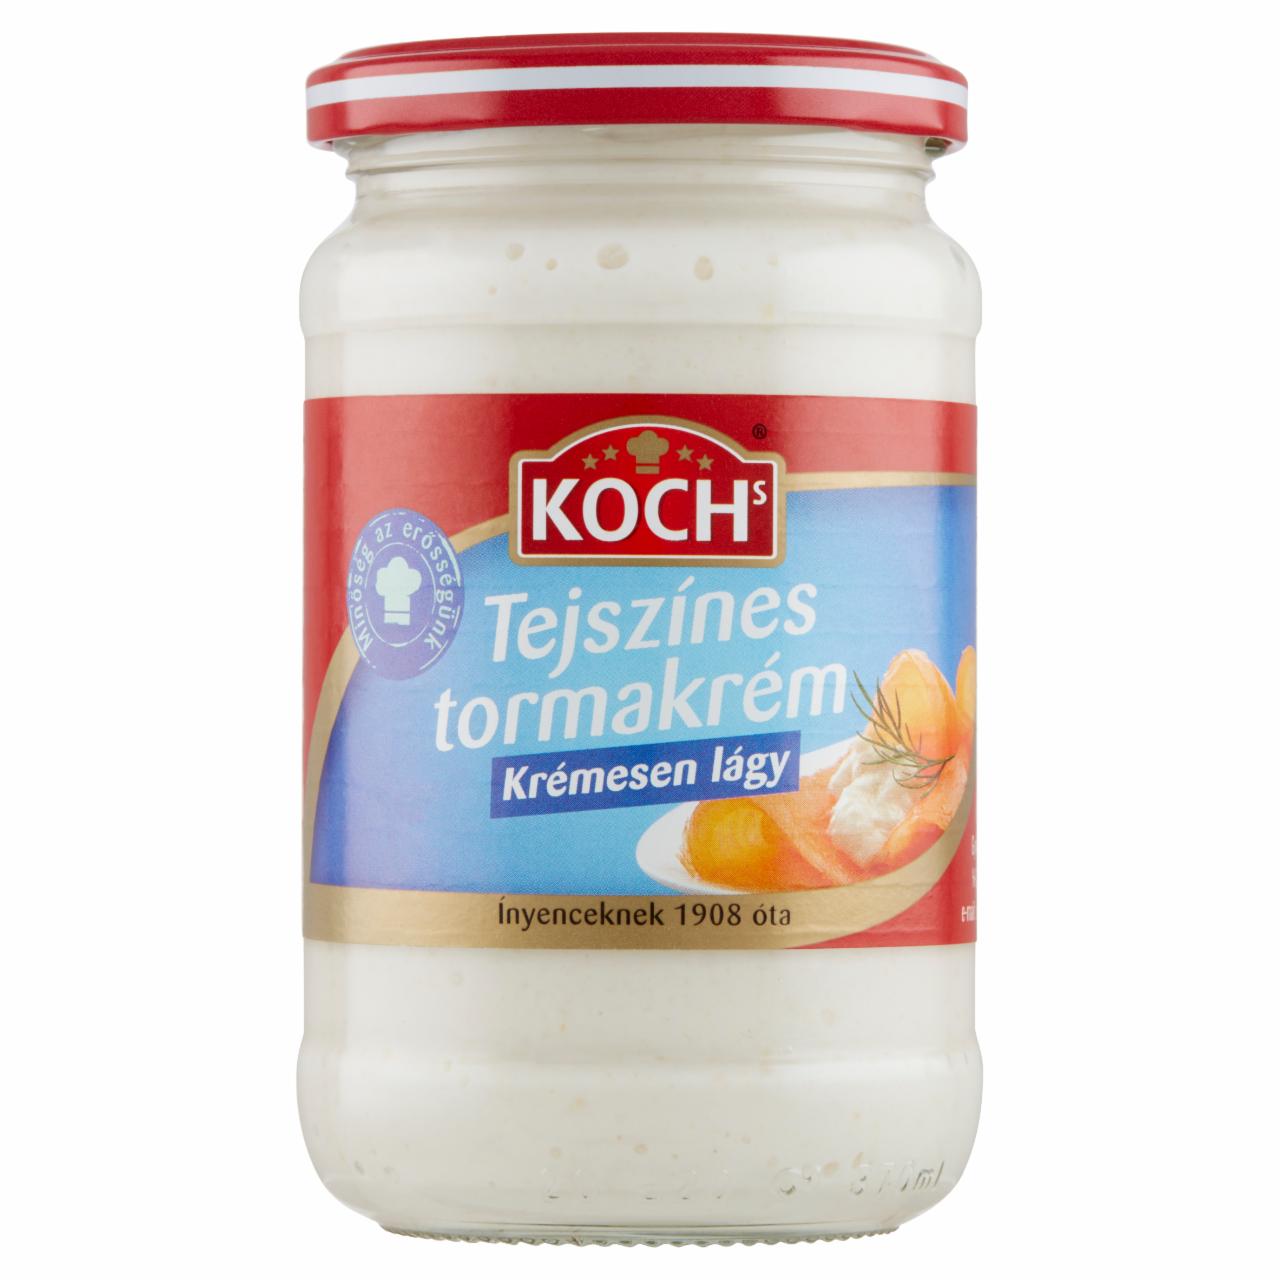 Képek - Koch's tejszínes tormakrém 340 g